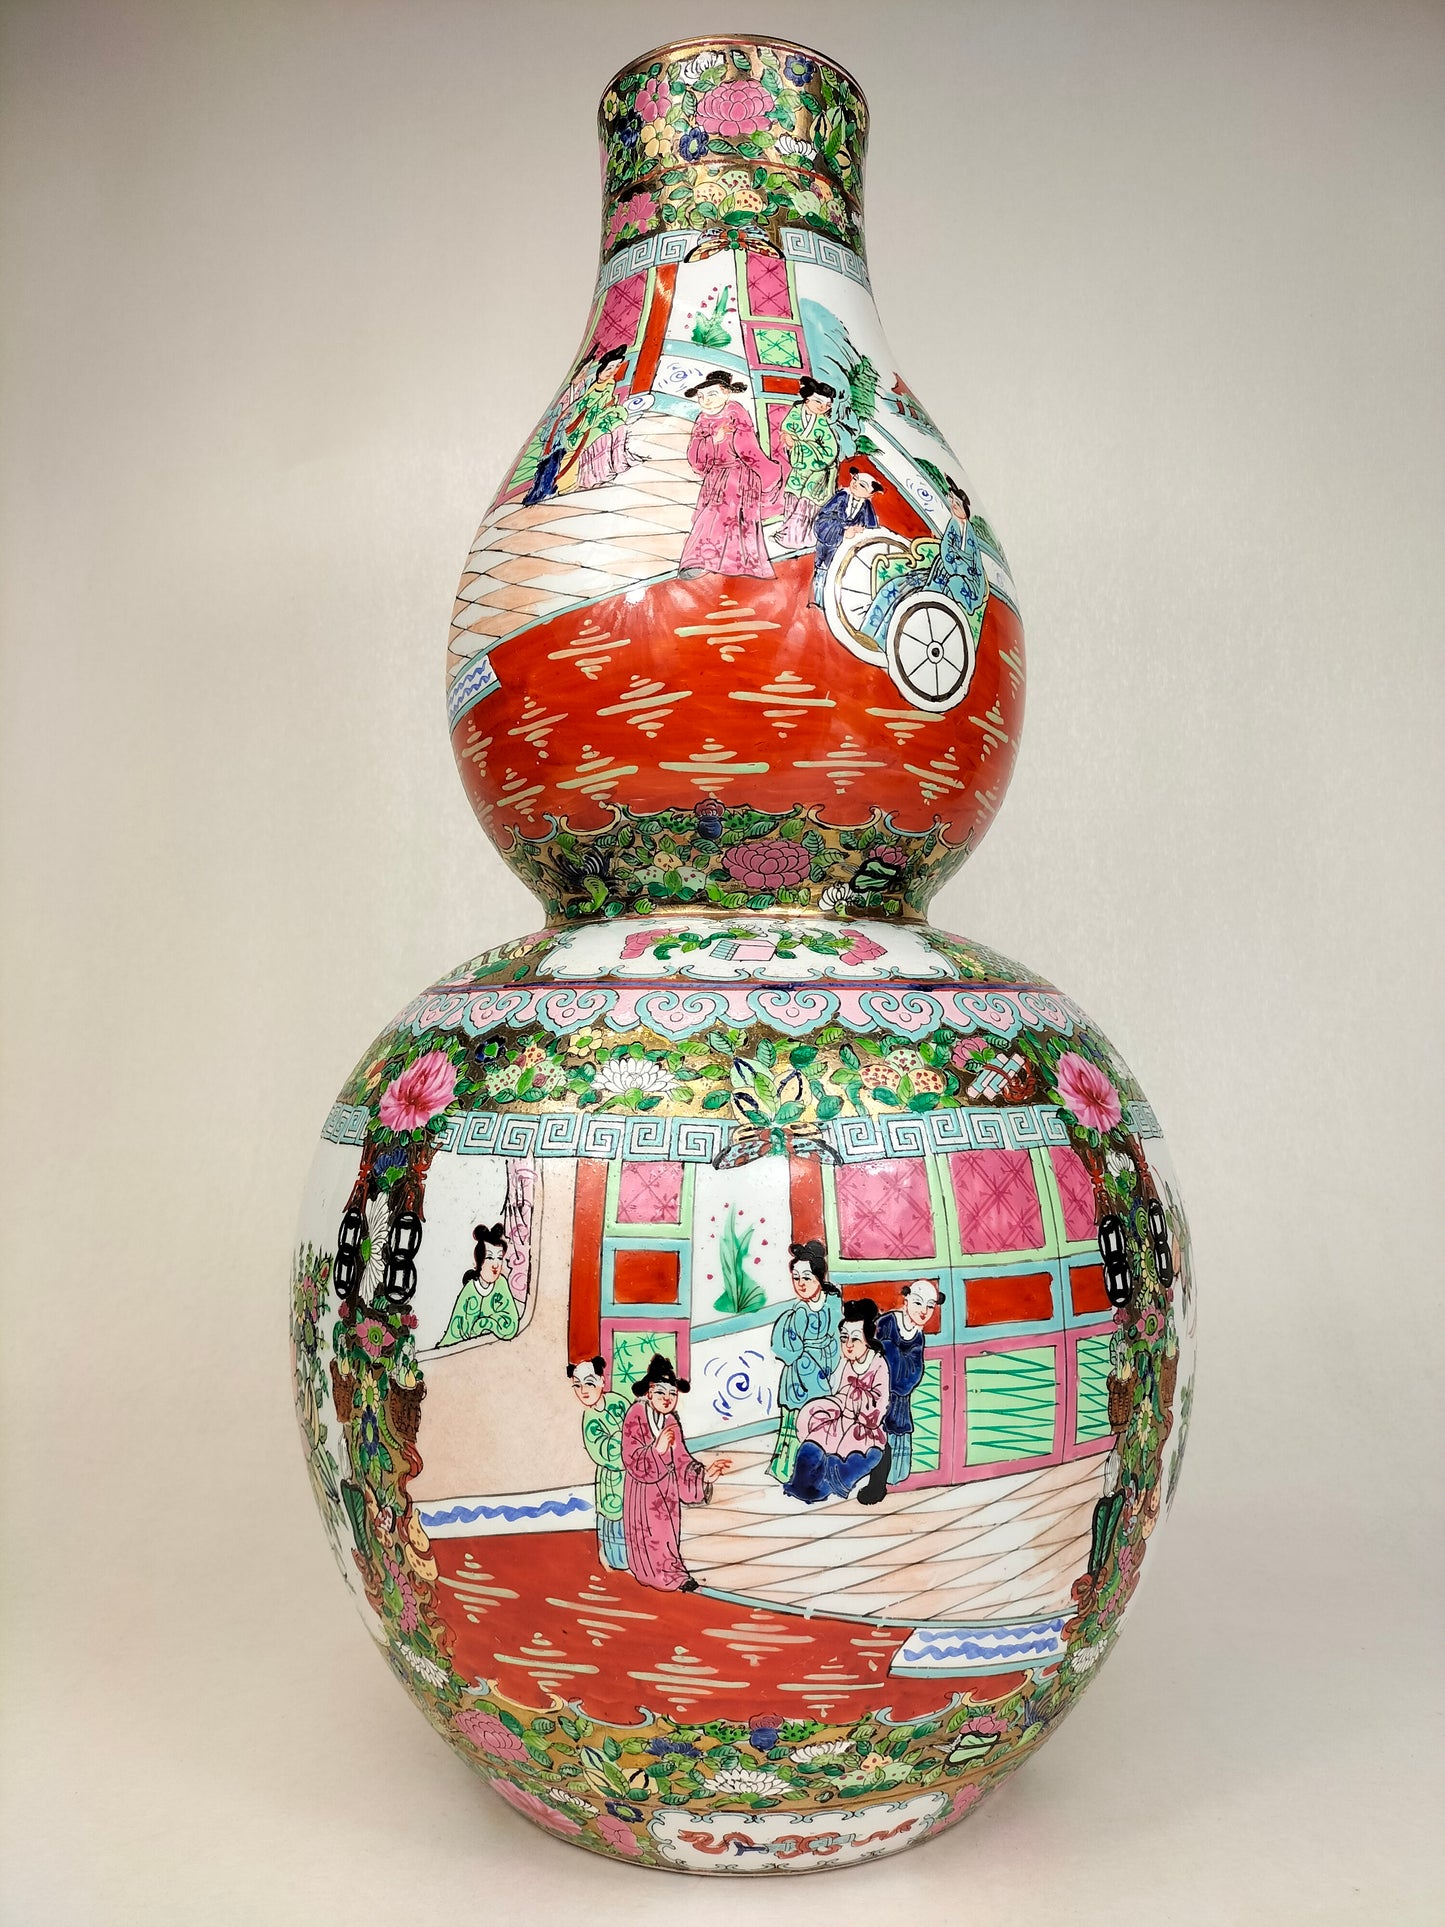 大型 XL 中国广州玫瑰花章双葫芦花瓶// 20 世纪